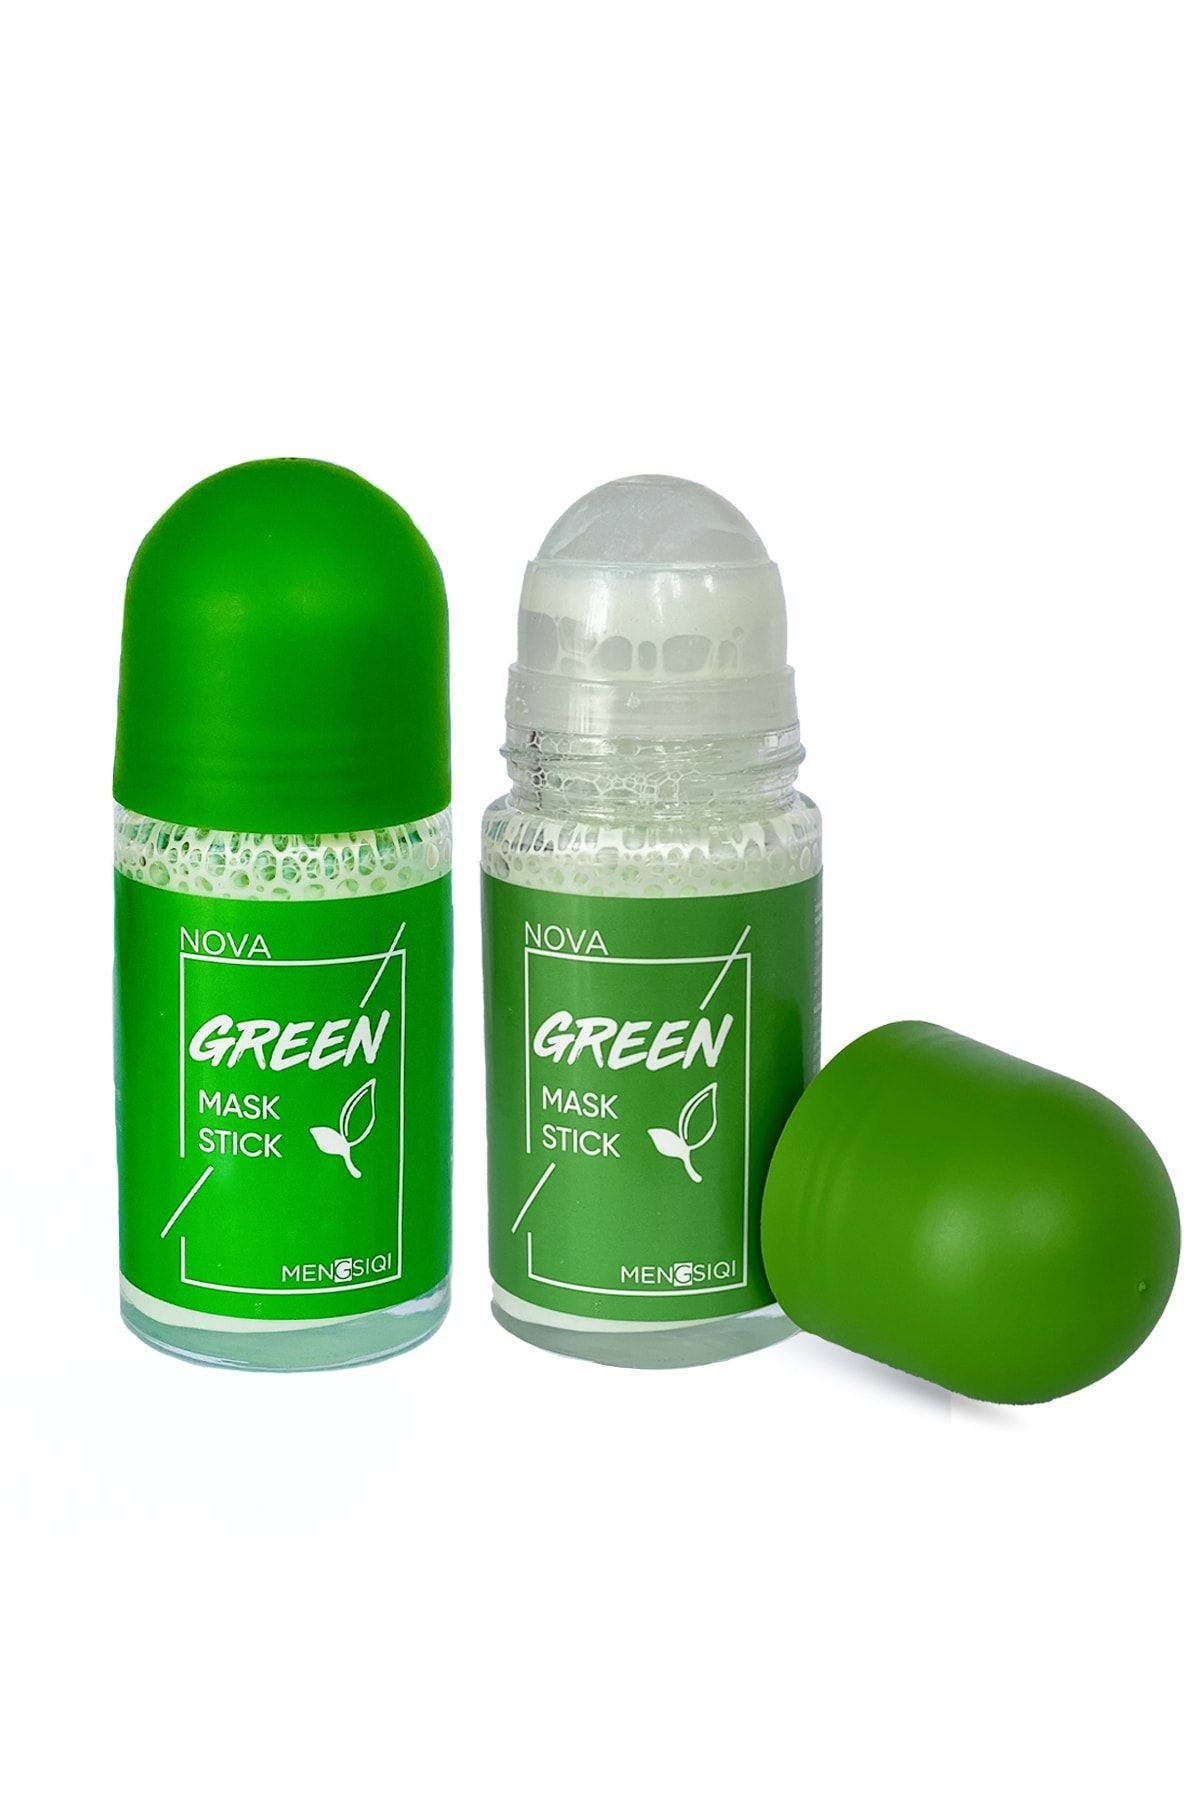 Nova Green Mask Stick Premium %100 Natural